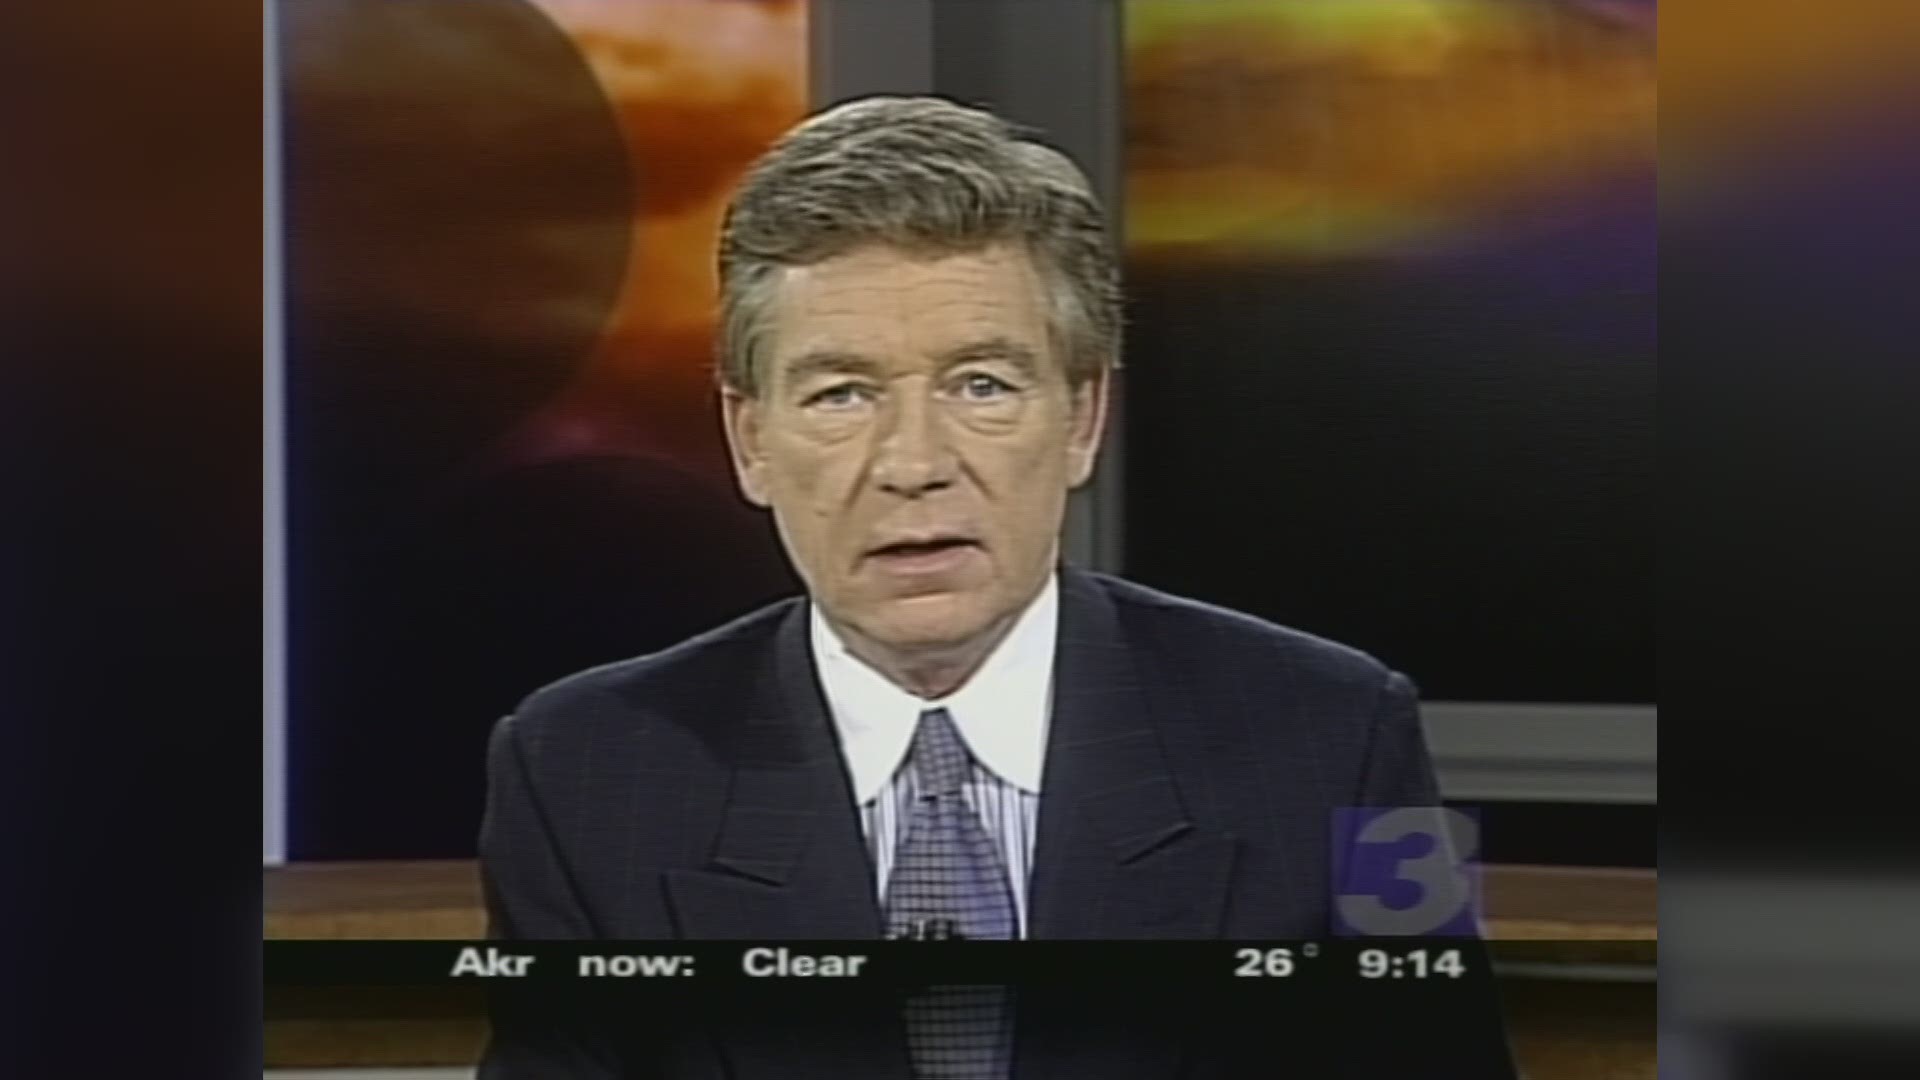 news anchor dies on air